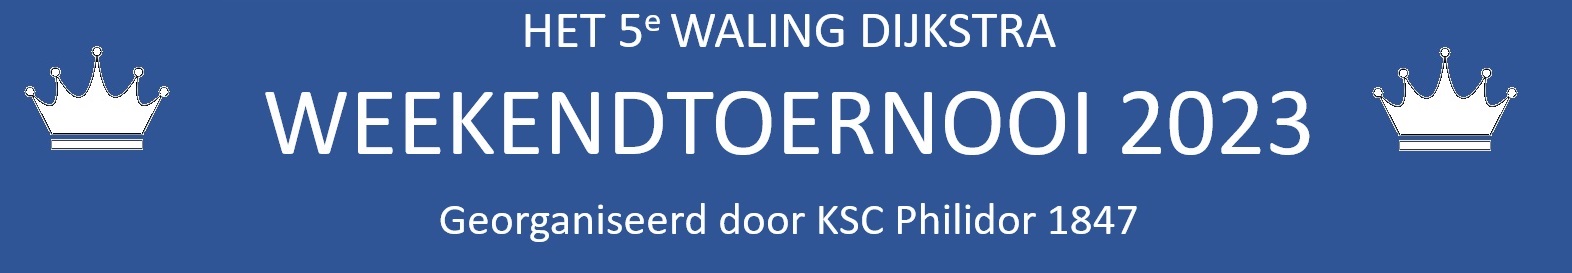 Waling Dijkstra 2023